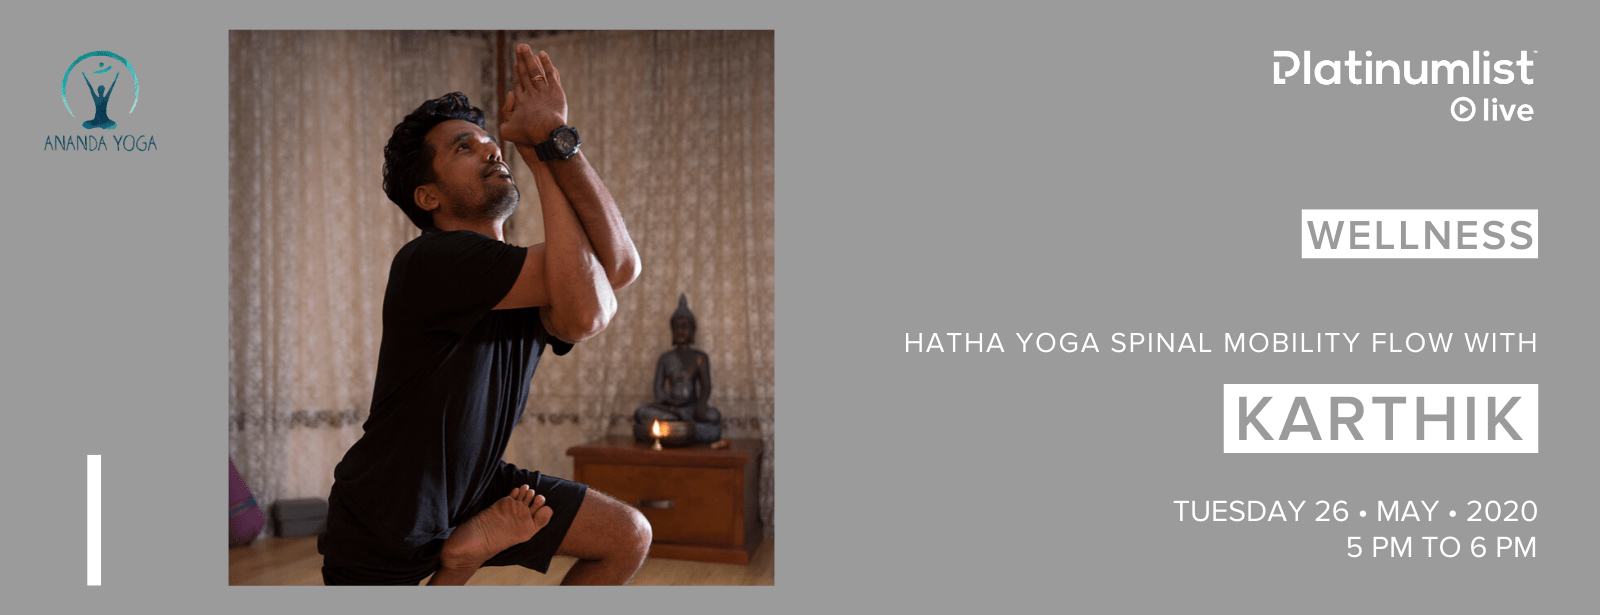 Hatha Yoga with Karthik Dubai 2020